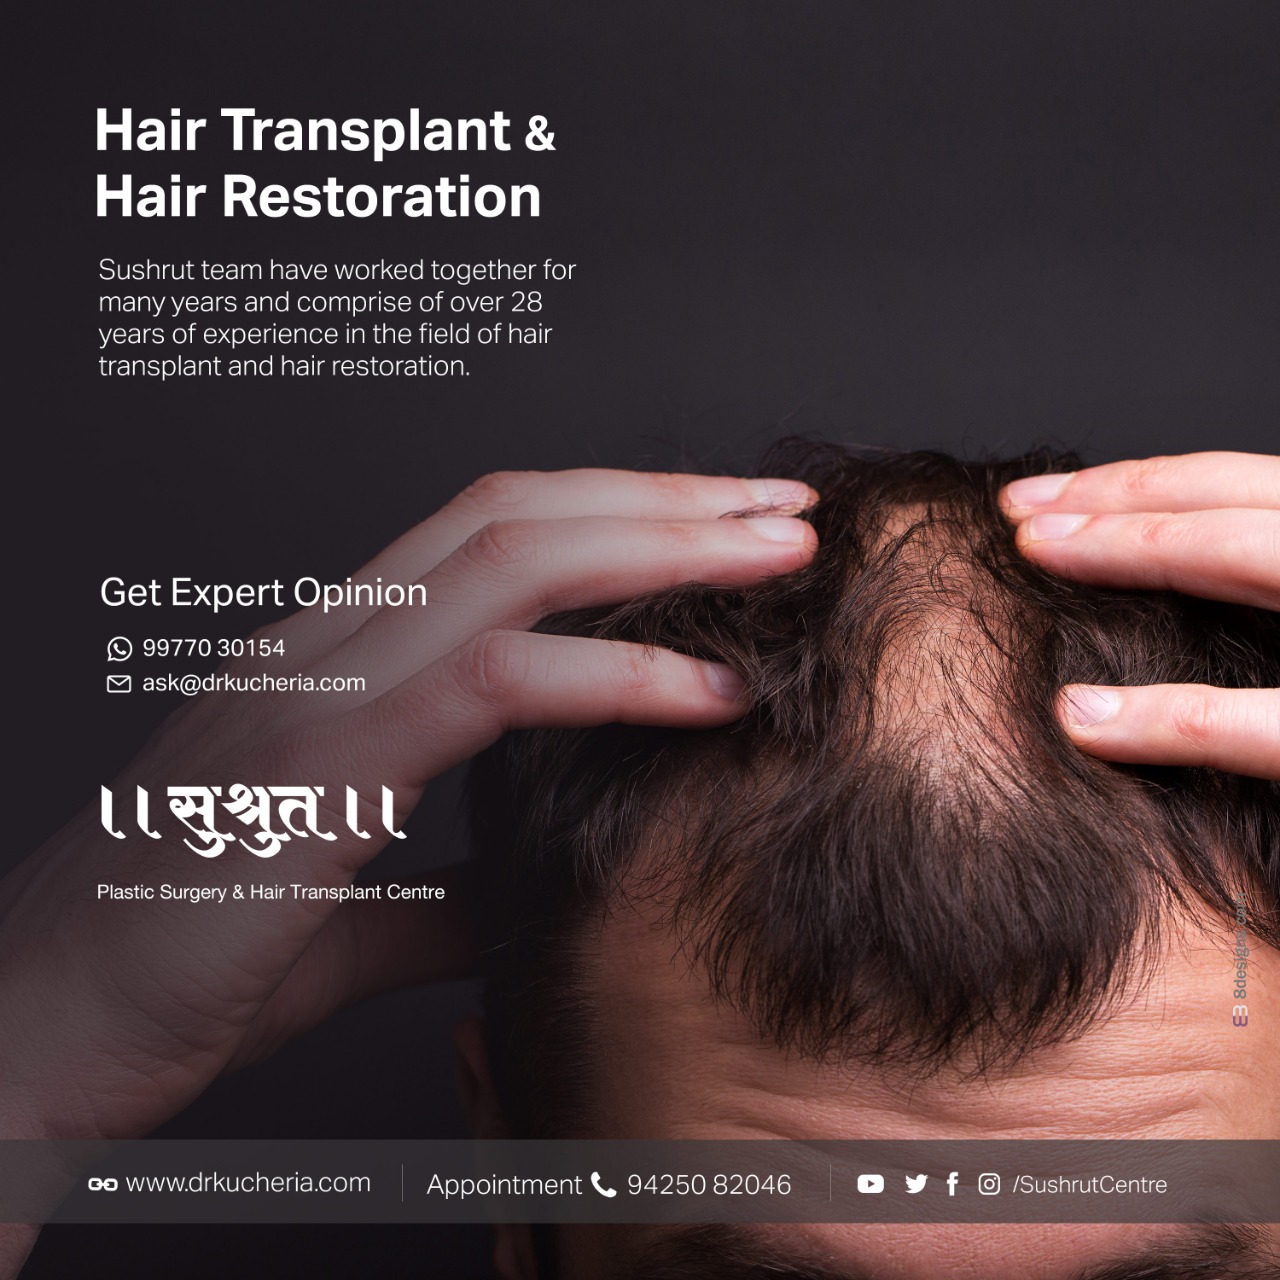 Hair Transplant – Sushrut